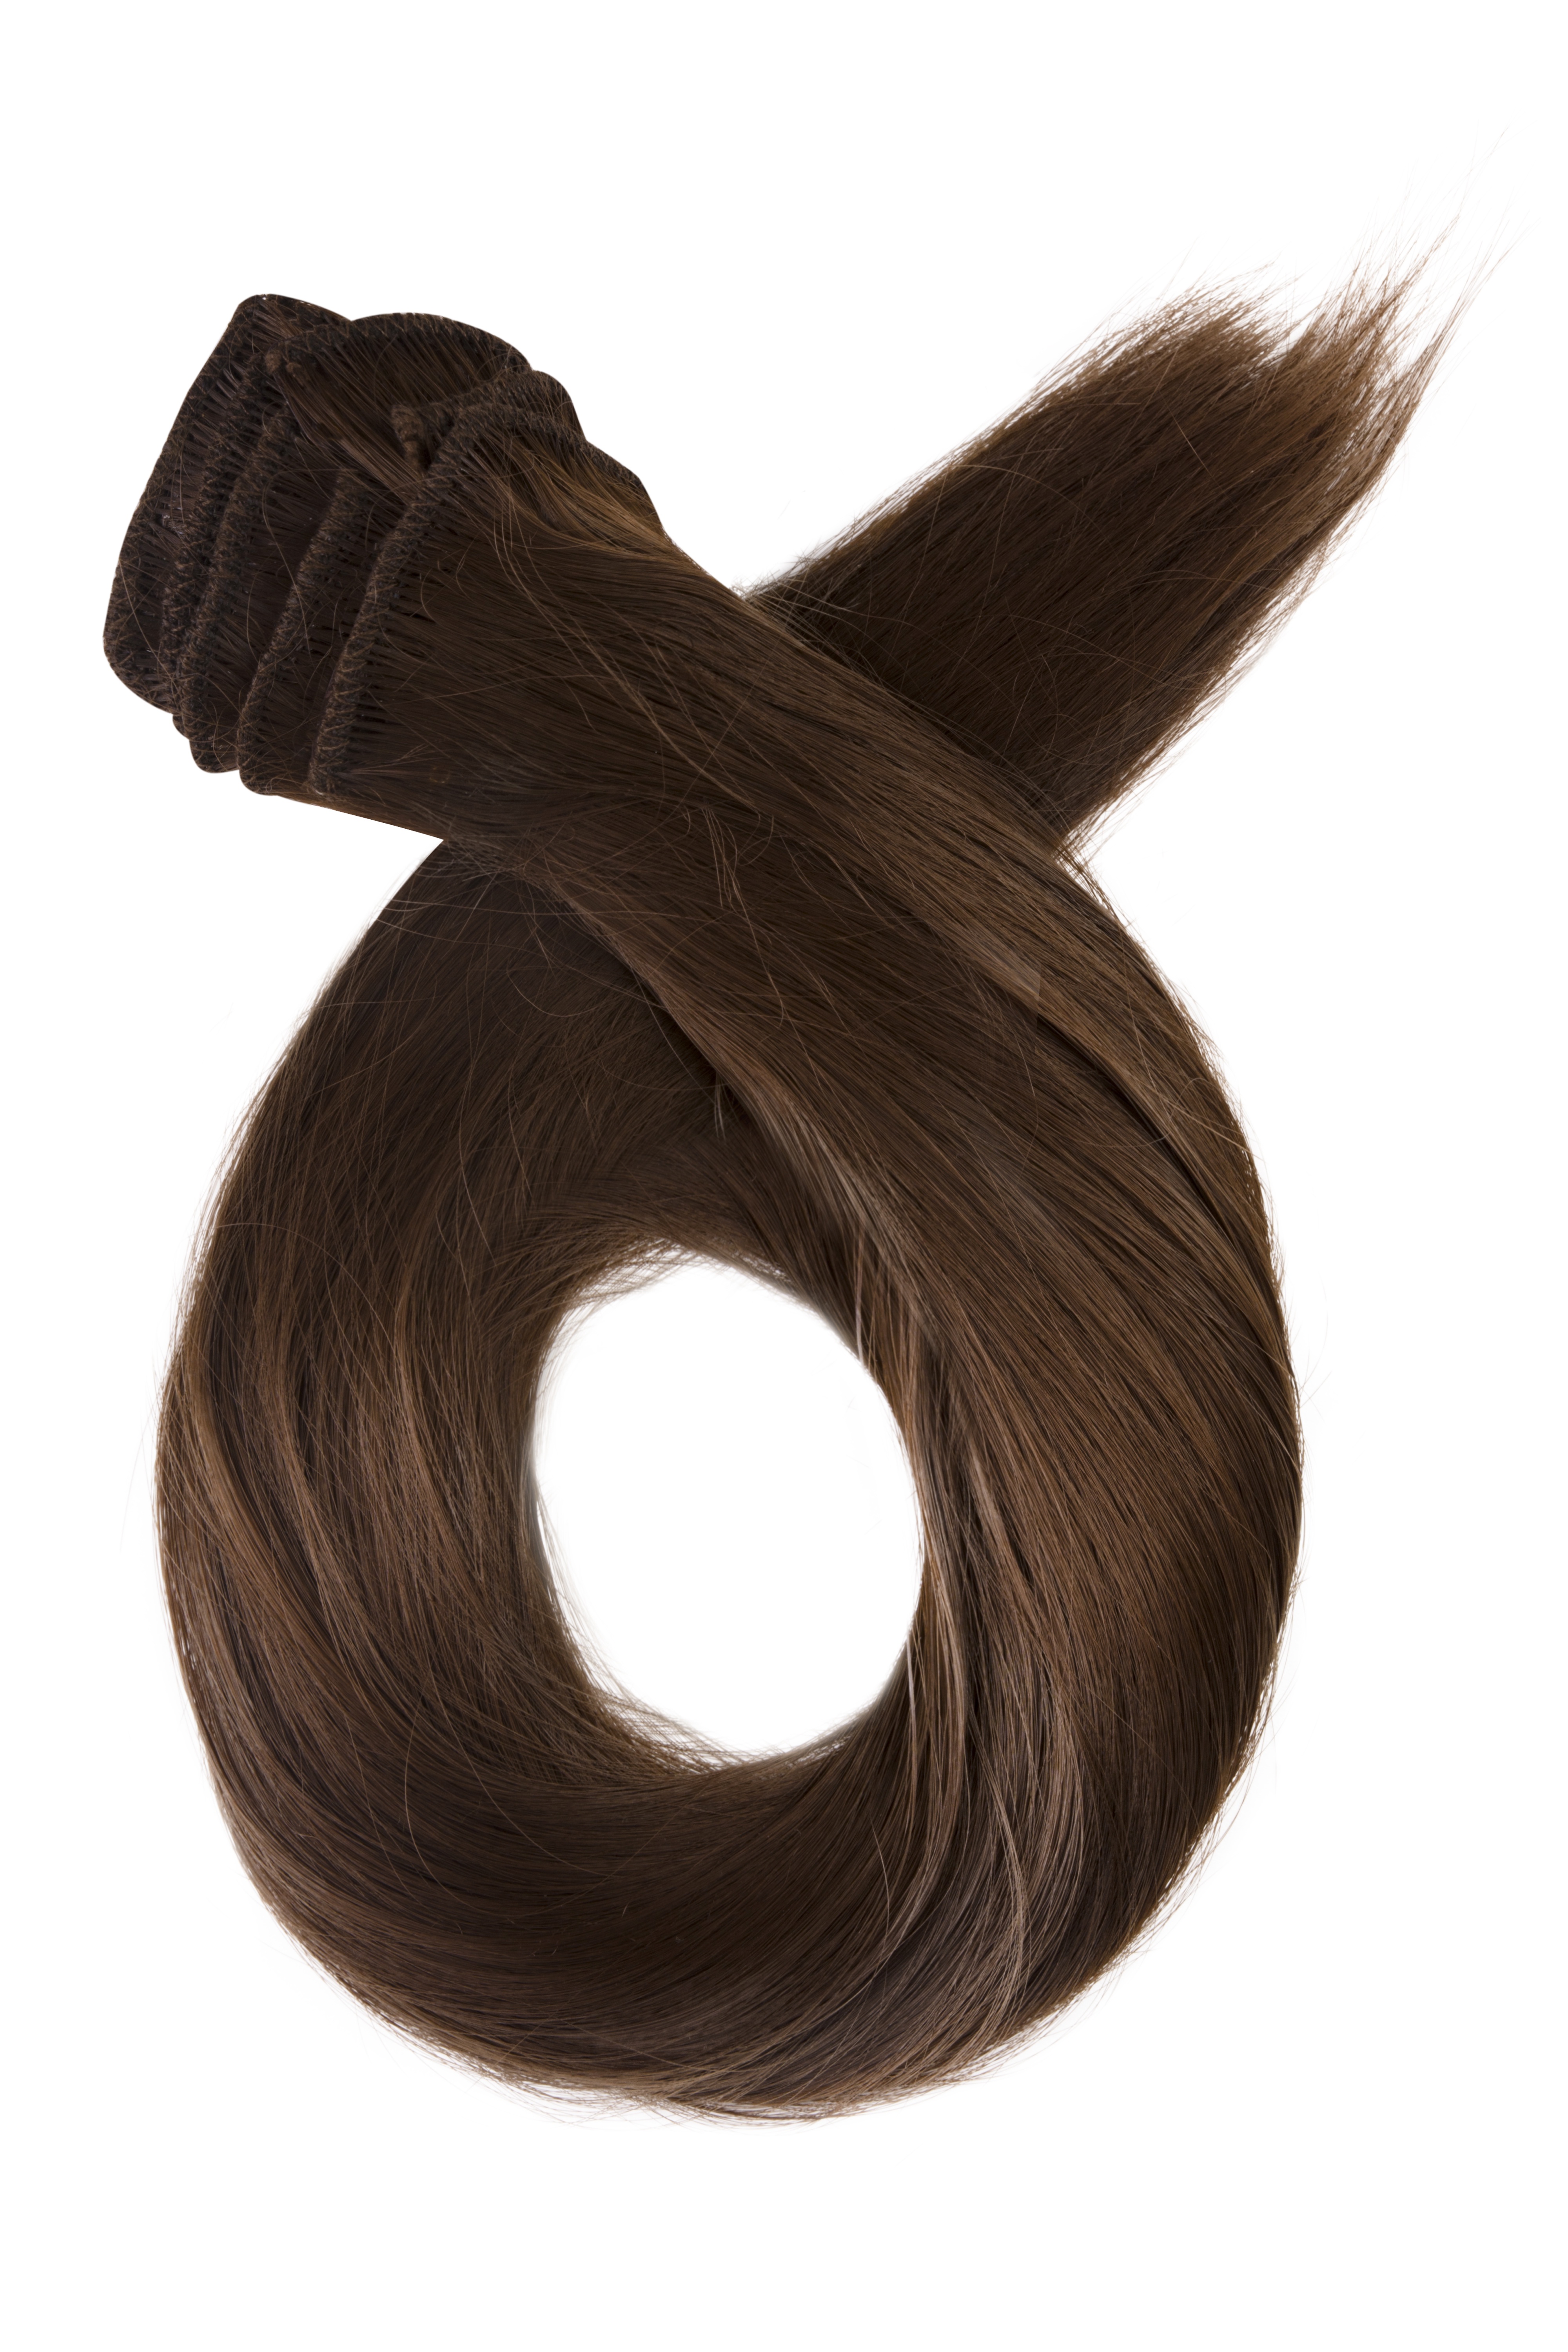 Prírodne hnedé clip in vlasy, 60cm, 115g, farba 8